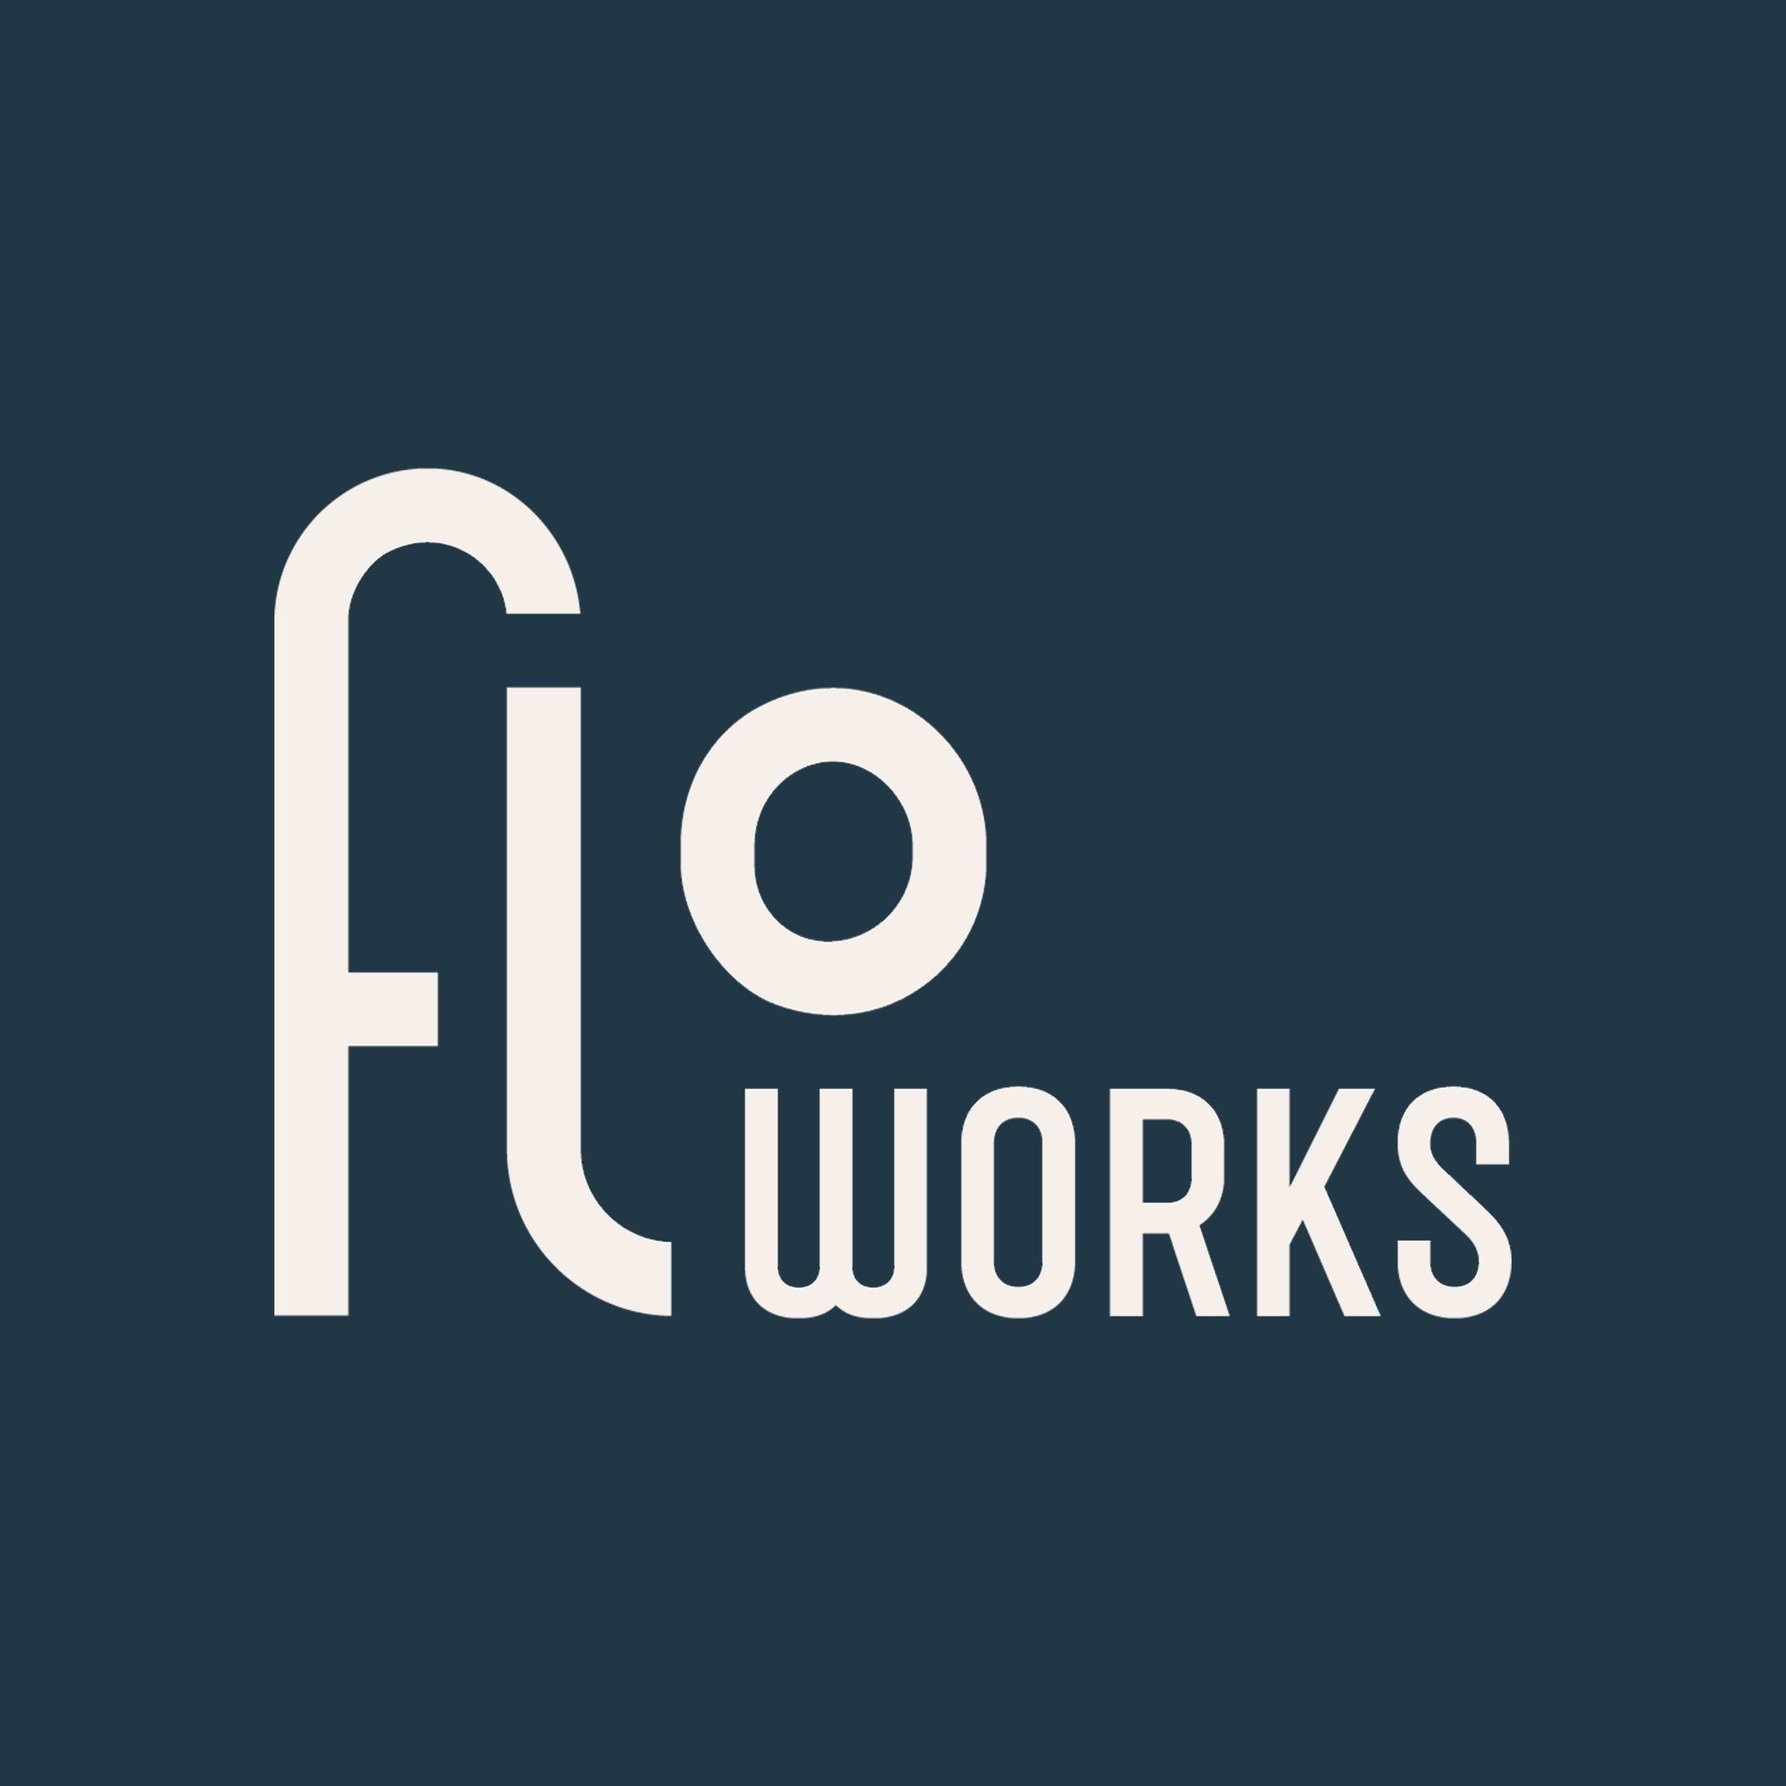 Floworks-4.jpg